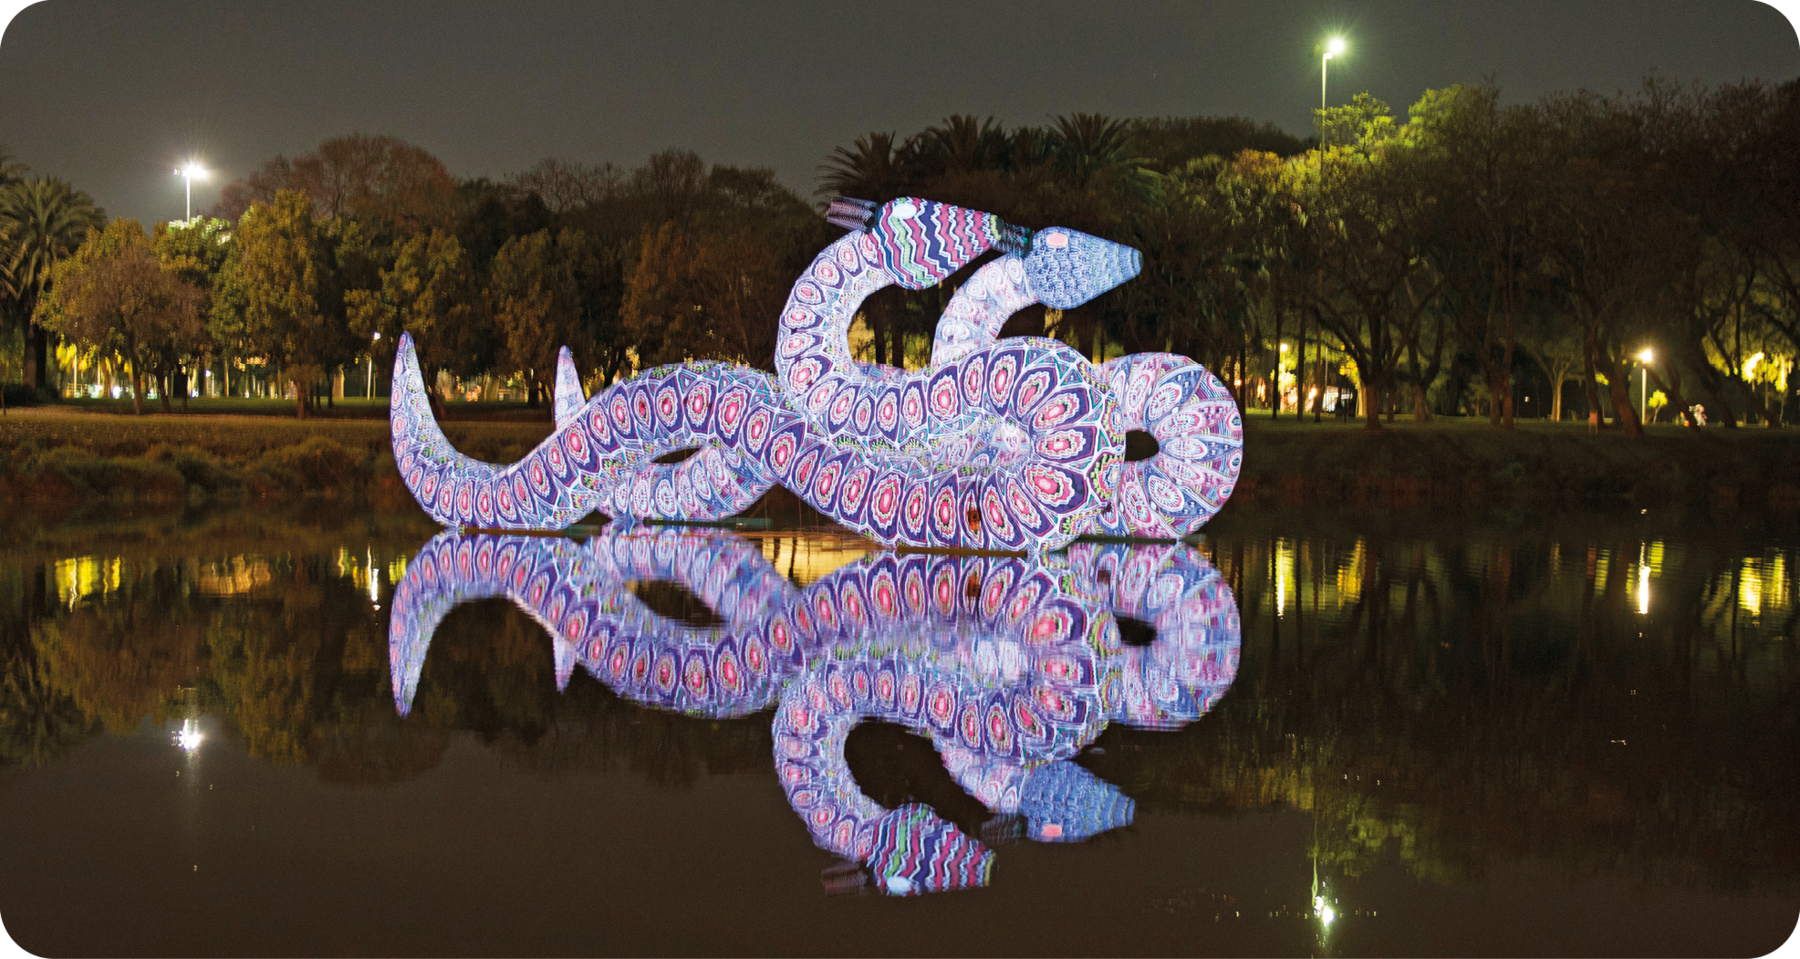 Fotografia. Durante a noite, área que apresenta um lago com estátua de duas serpentes luminosas lado a lado que têm o reflexo projetado na água. Ao fundo, estão árvores e postes de iluminação.